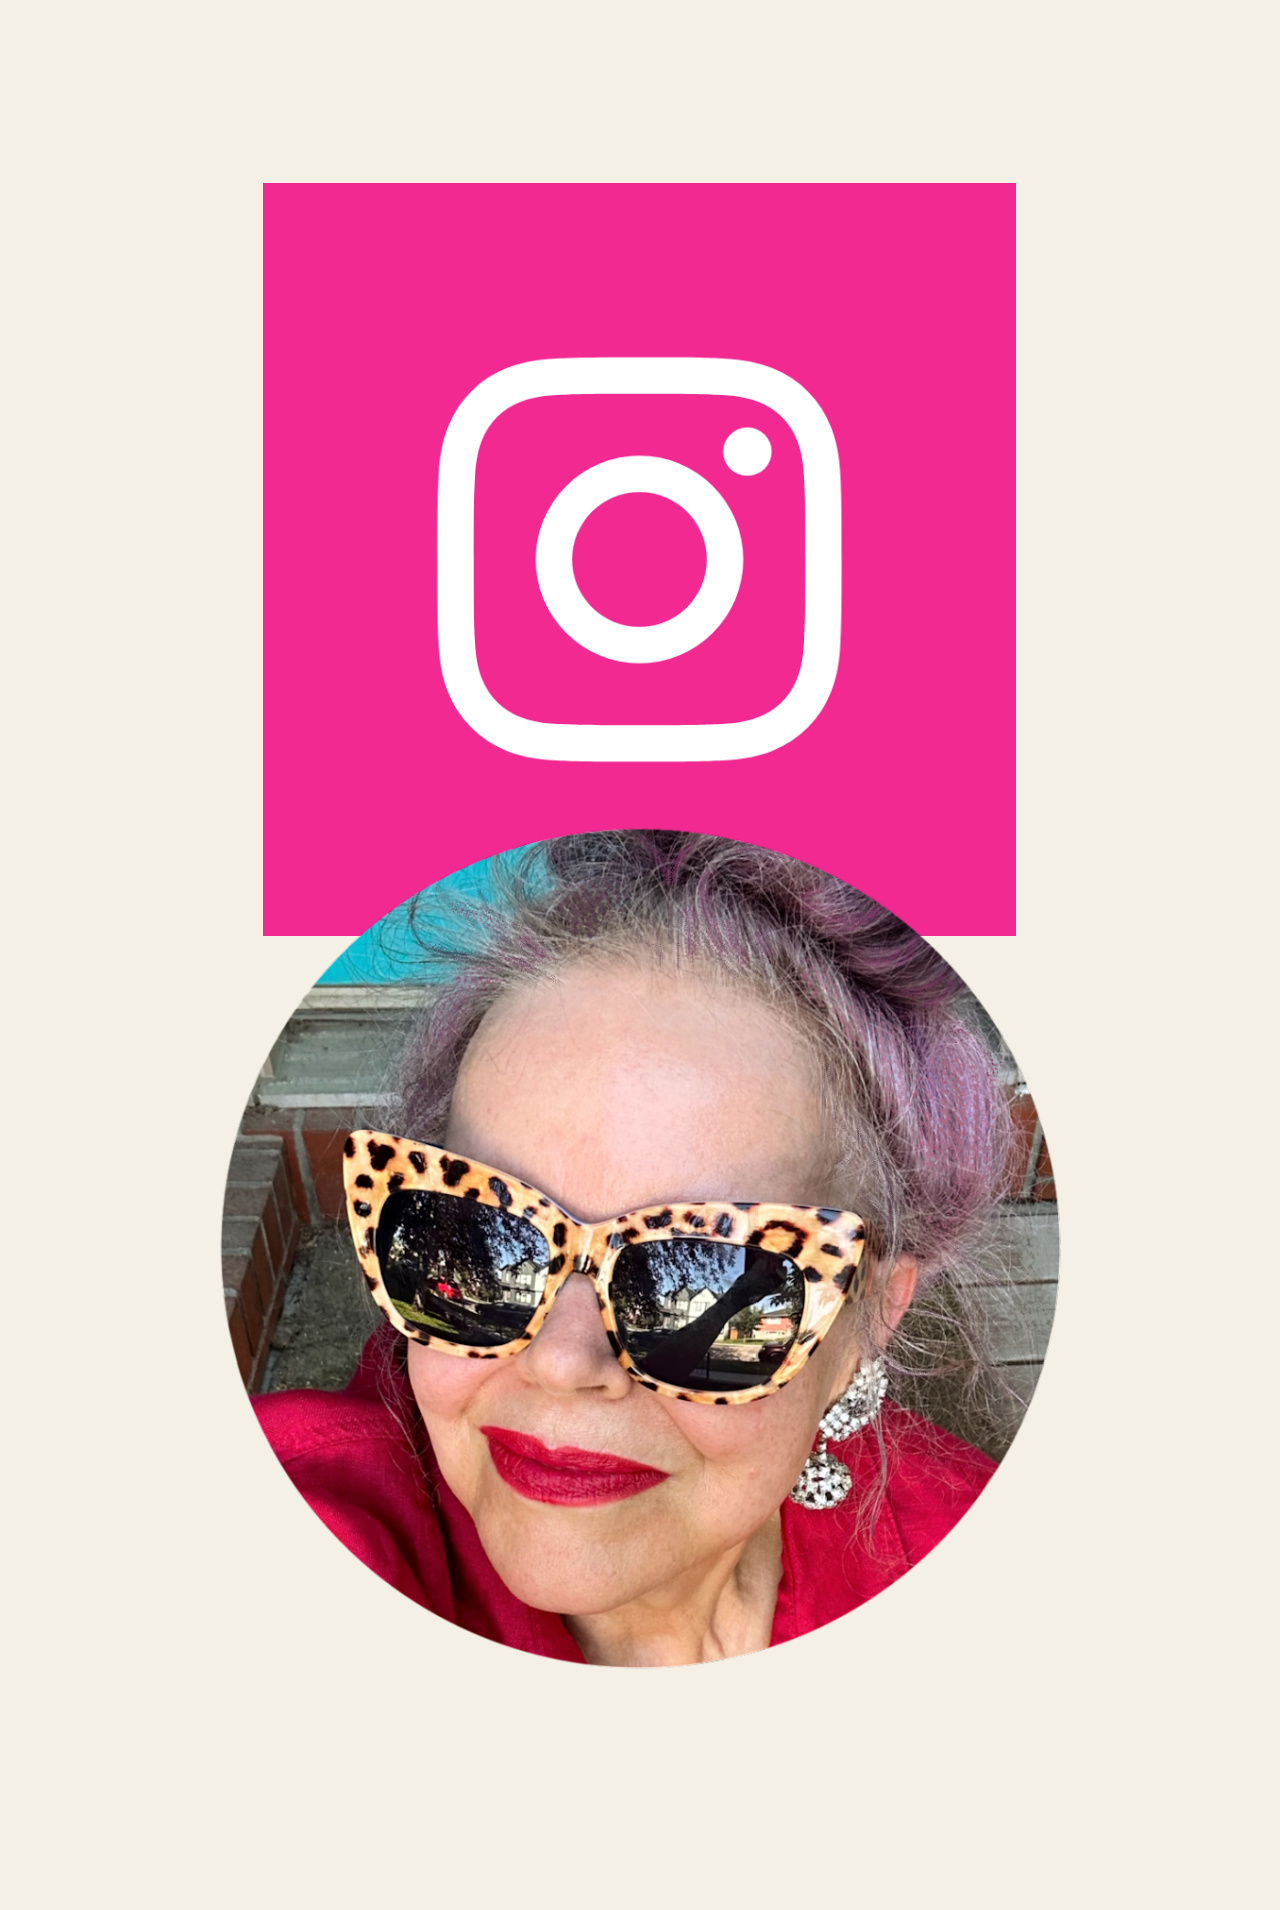 Image of Suzie Q and Instagram logo